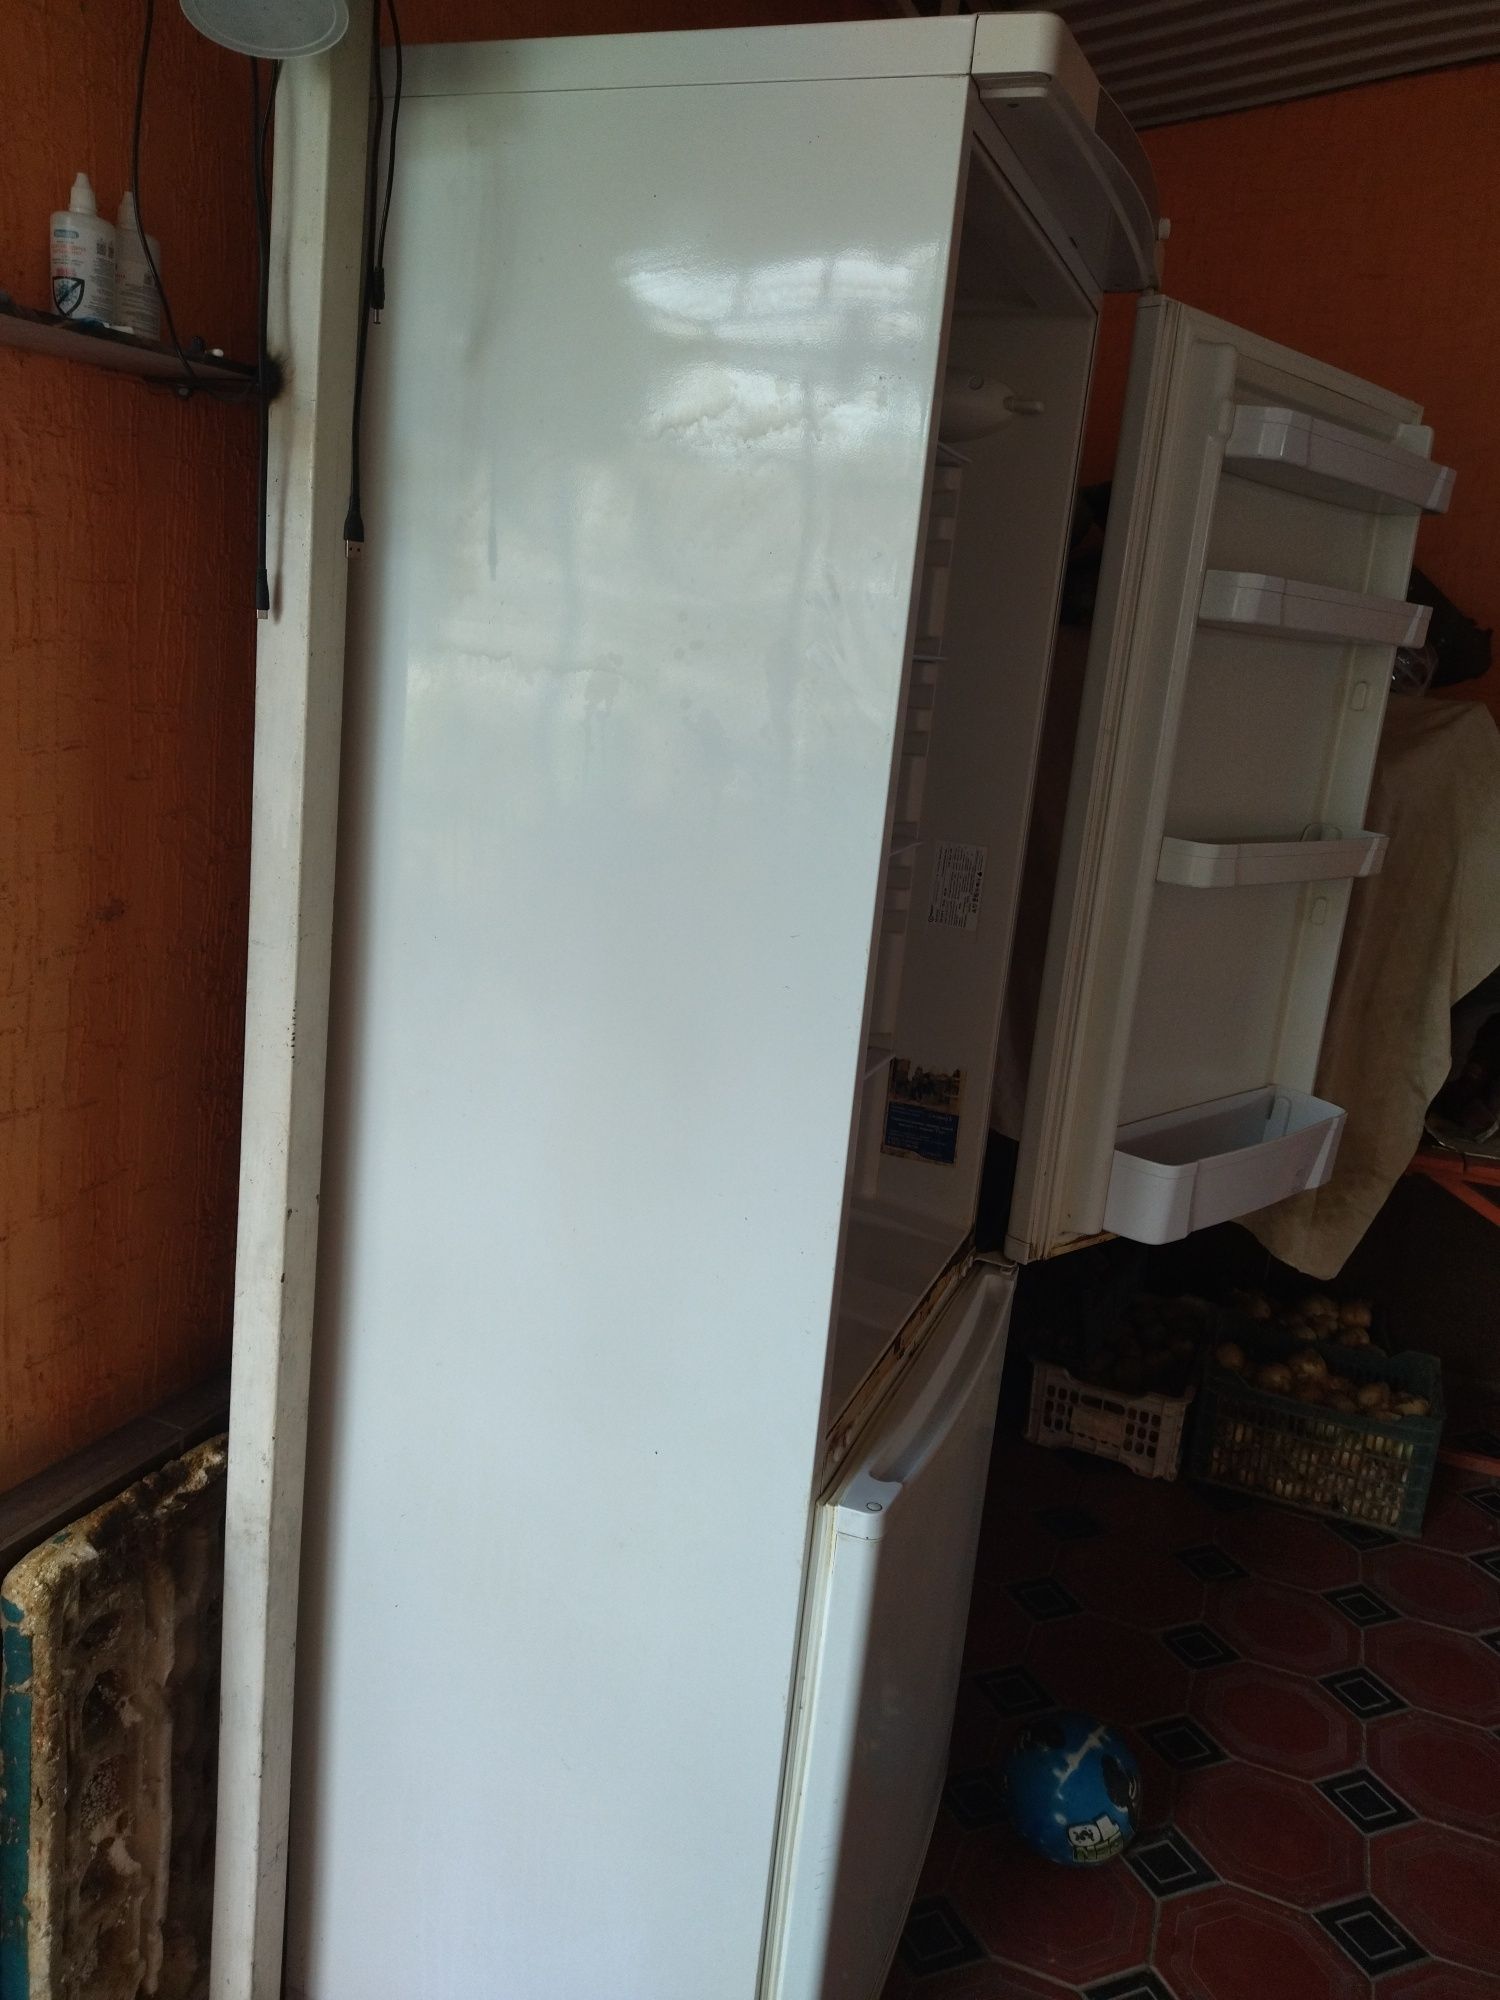 холодильник индезит